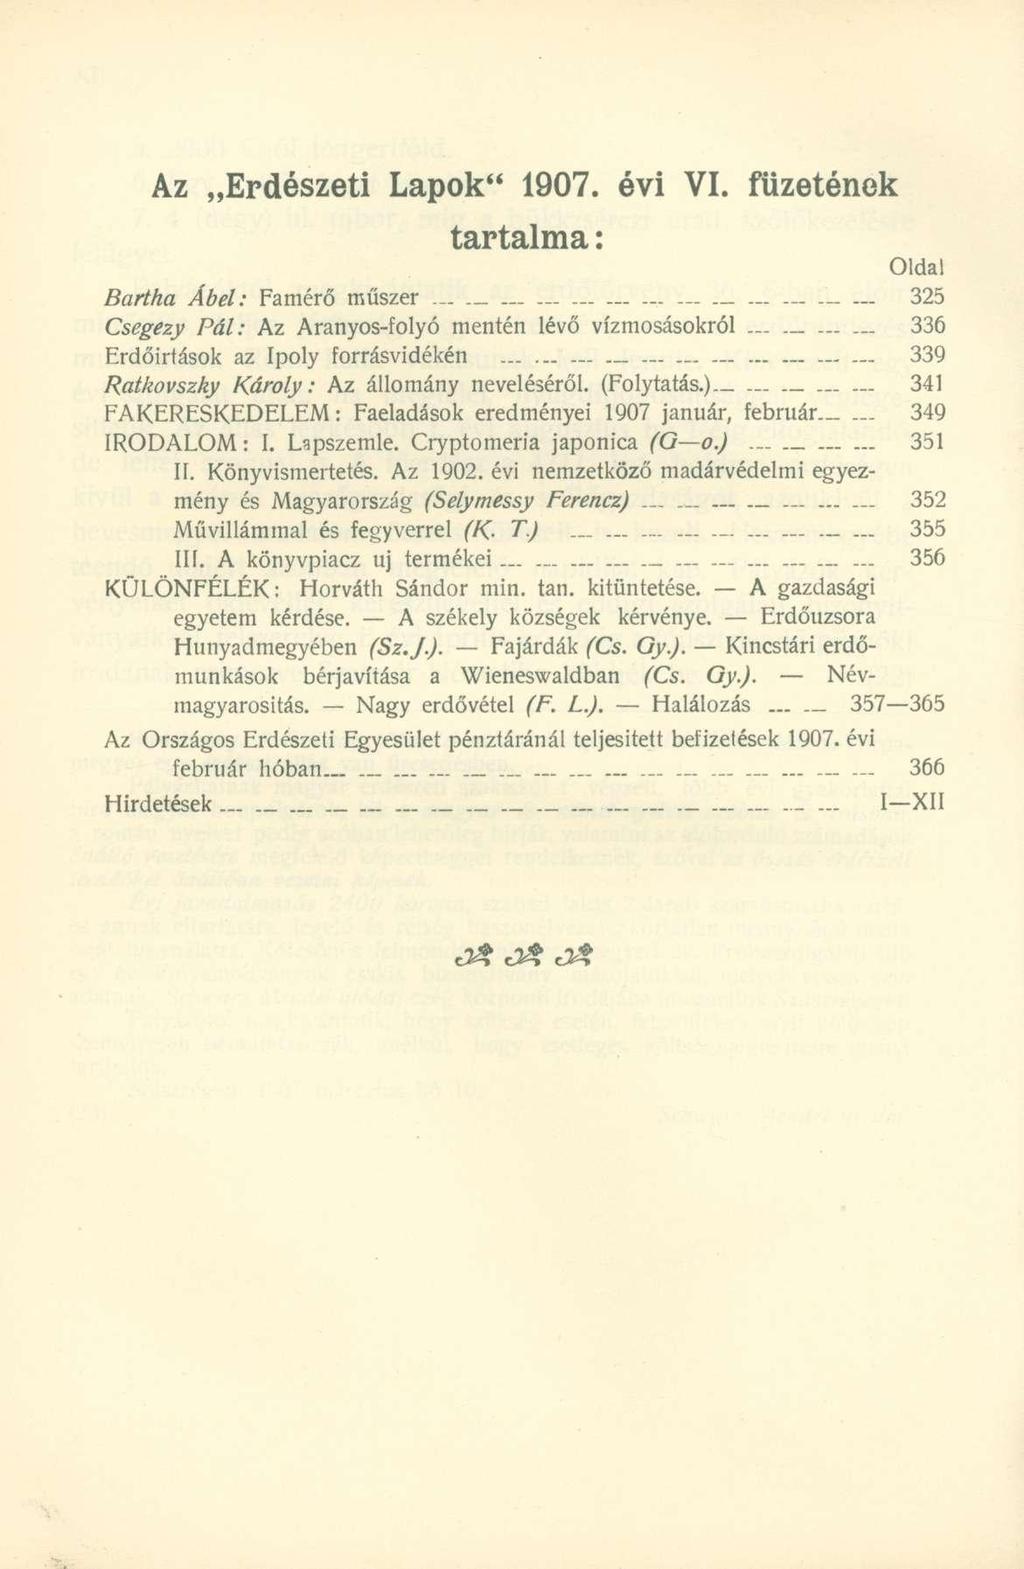 Az Erdészeti Lapok" 1907. évi VI. füzetének tartalma: Oldal Bartha Ábel: Famérő műszer._ 325 Csegezy Pál: Az Aranyos-folyó mentén lévő vízmosásokról.